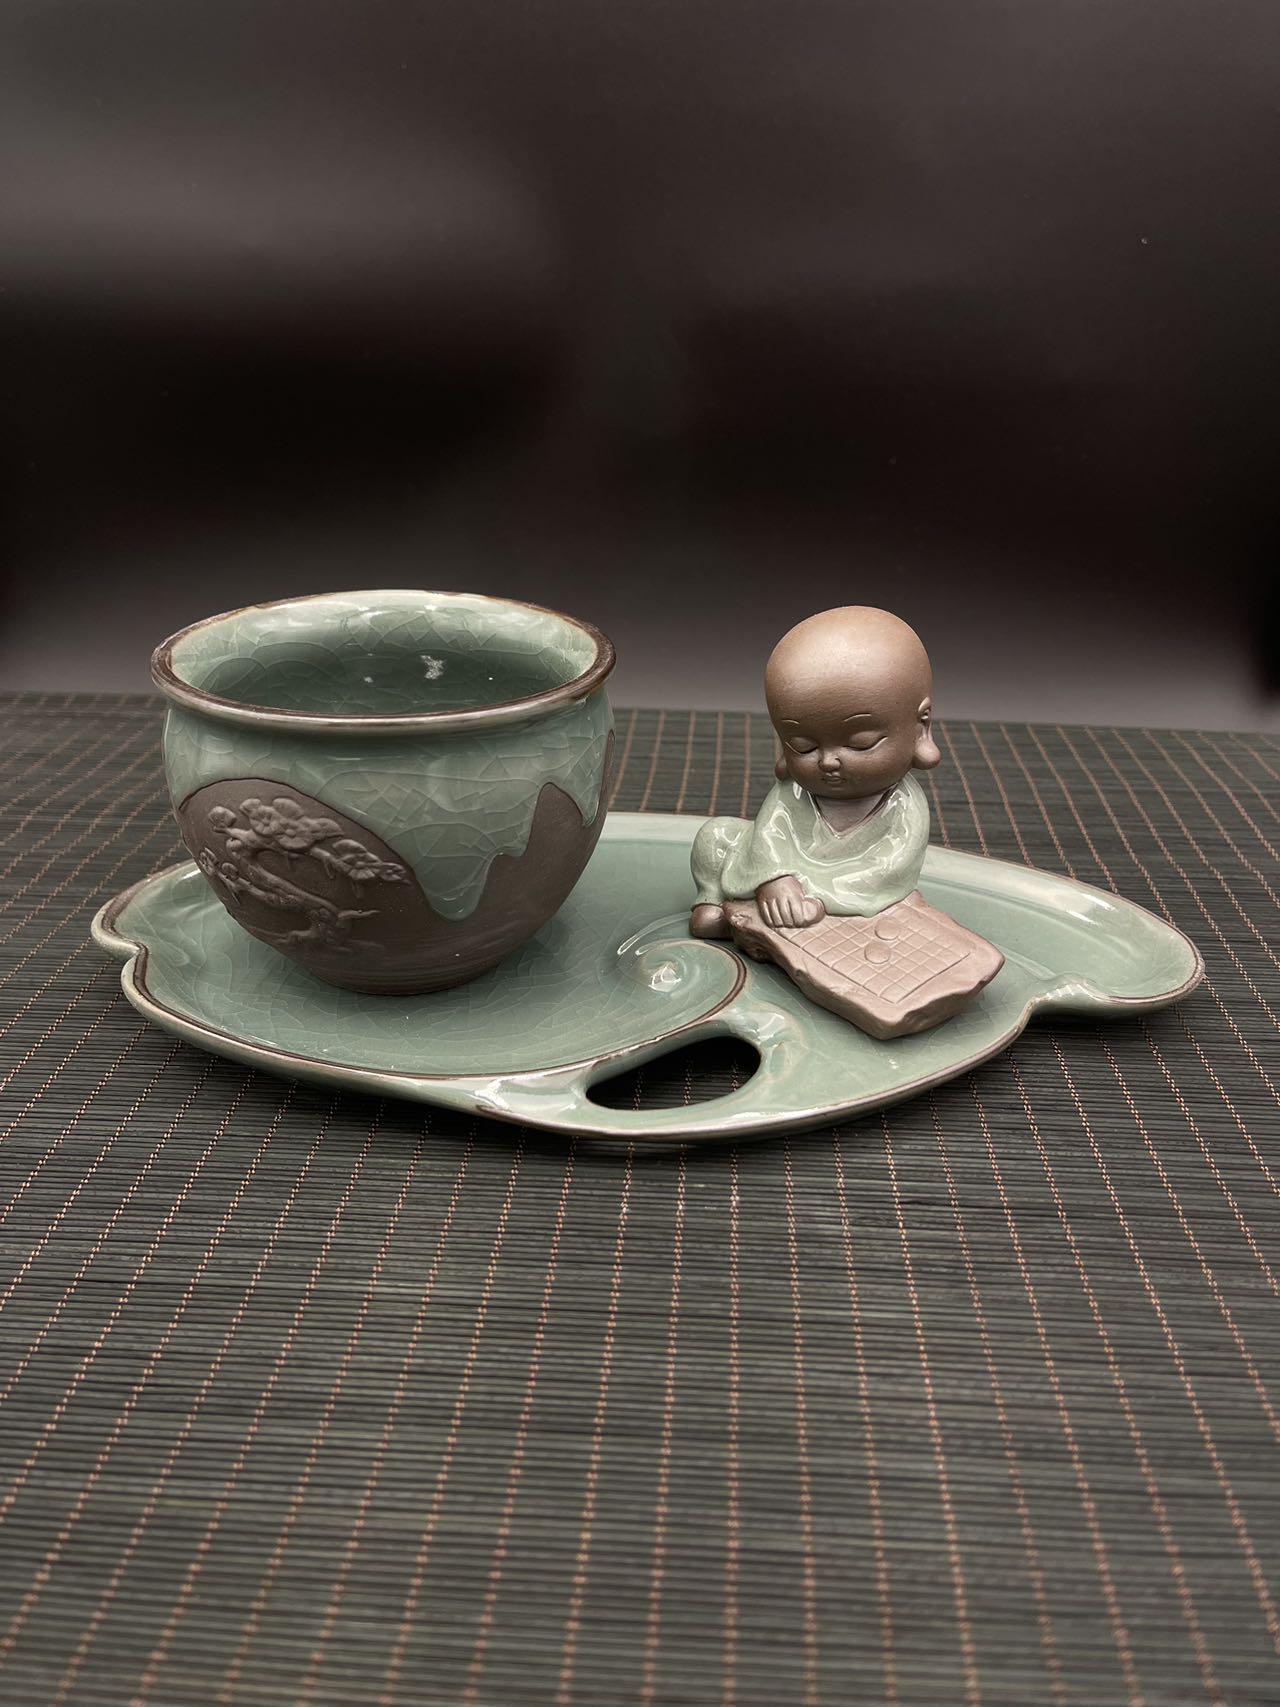 Small Ceramic Glazed Flower Pot with Tray and Buddha Figurine